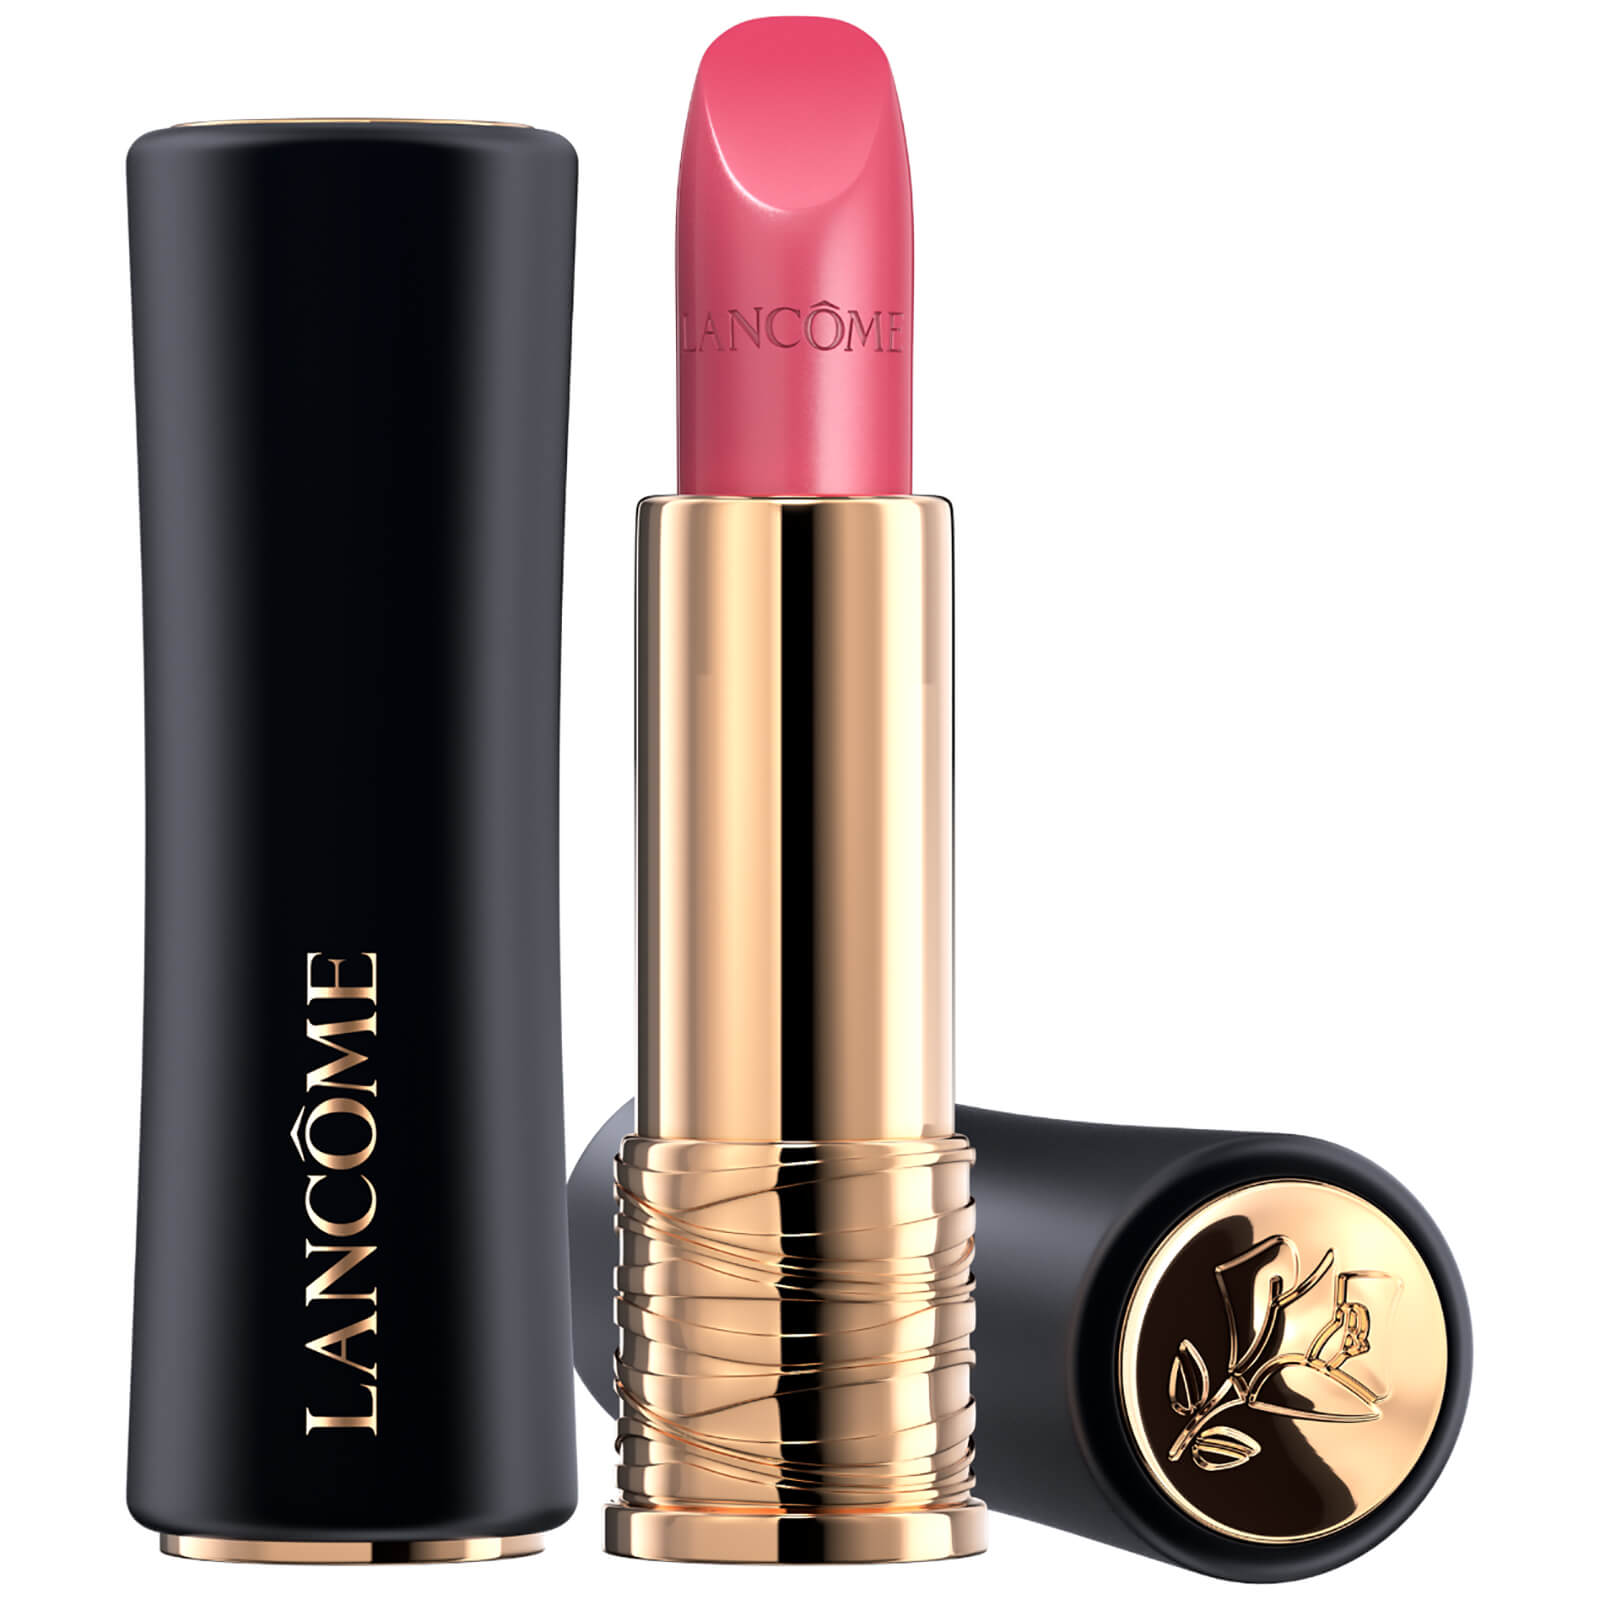 Lancôme L'Absolu Rouge Cream Lipstick 35ml (Varie Tonalità) - 08 La Vie Est Belle